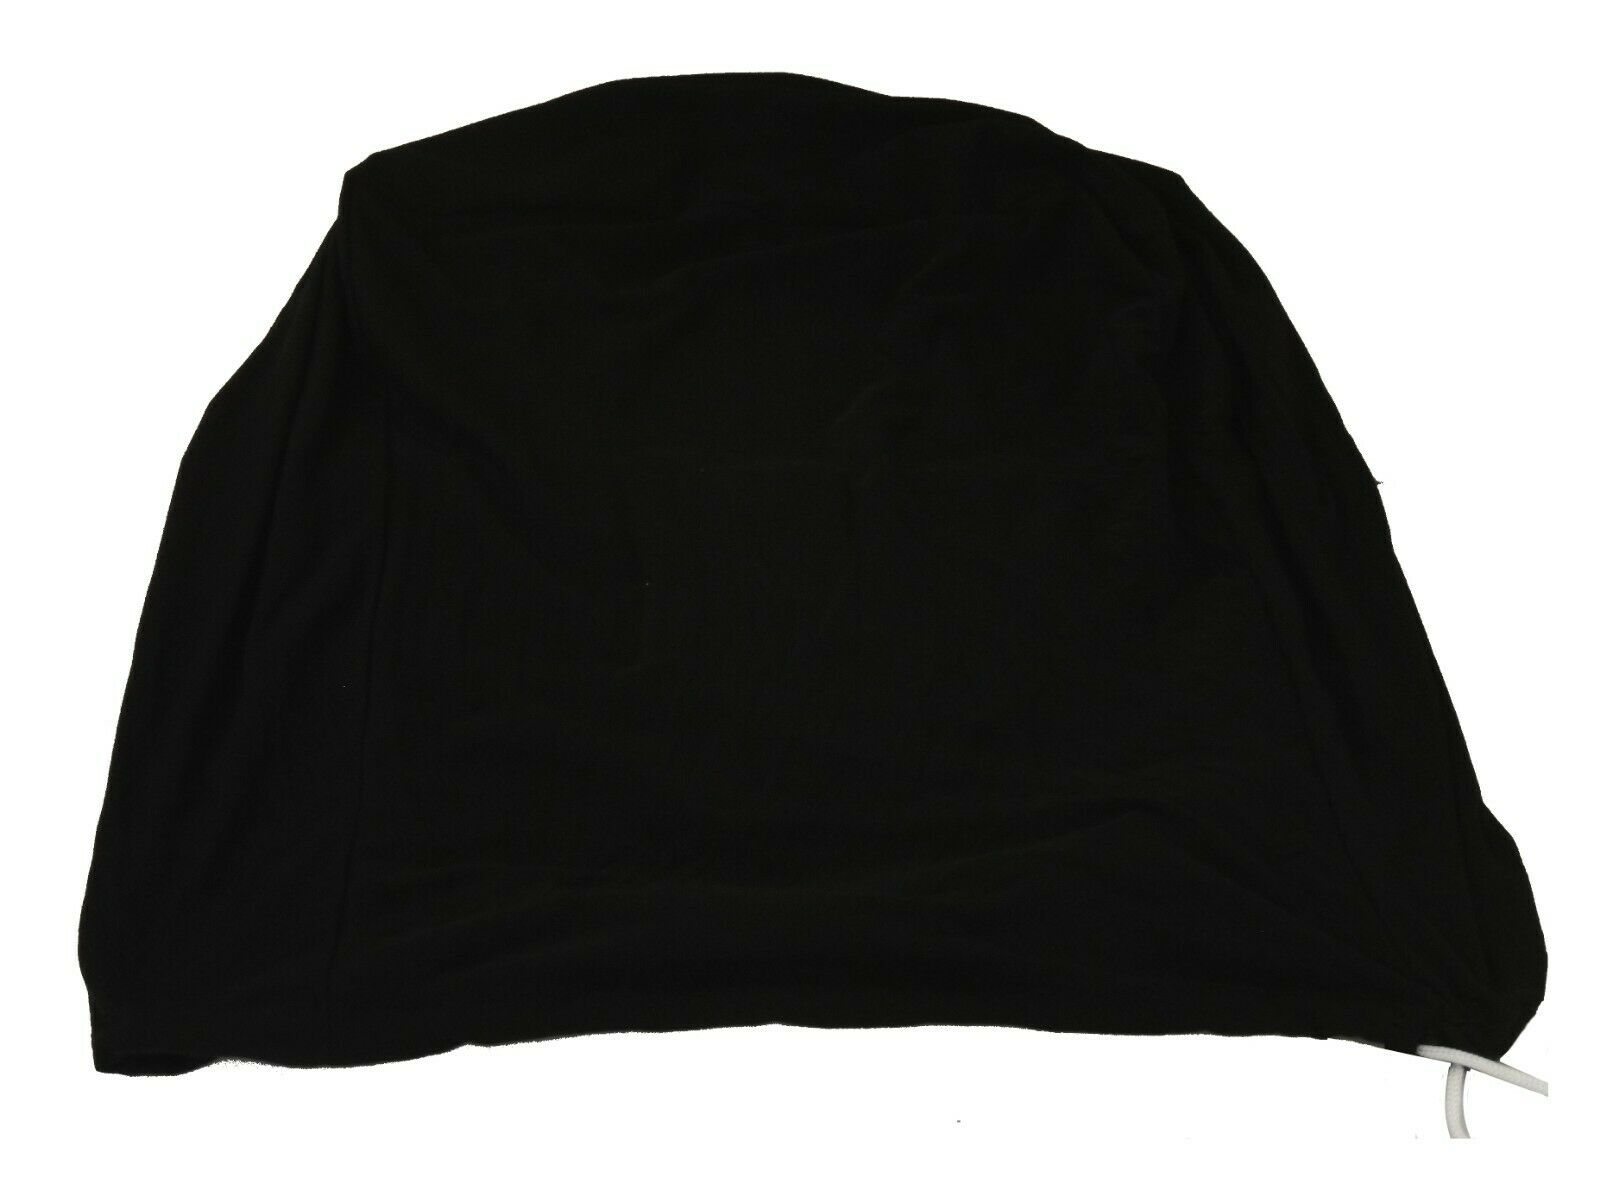 Auto Schutzhaube 5,8 m schwarz Schutzhülle Abdeckung Plane Decke